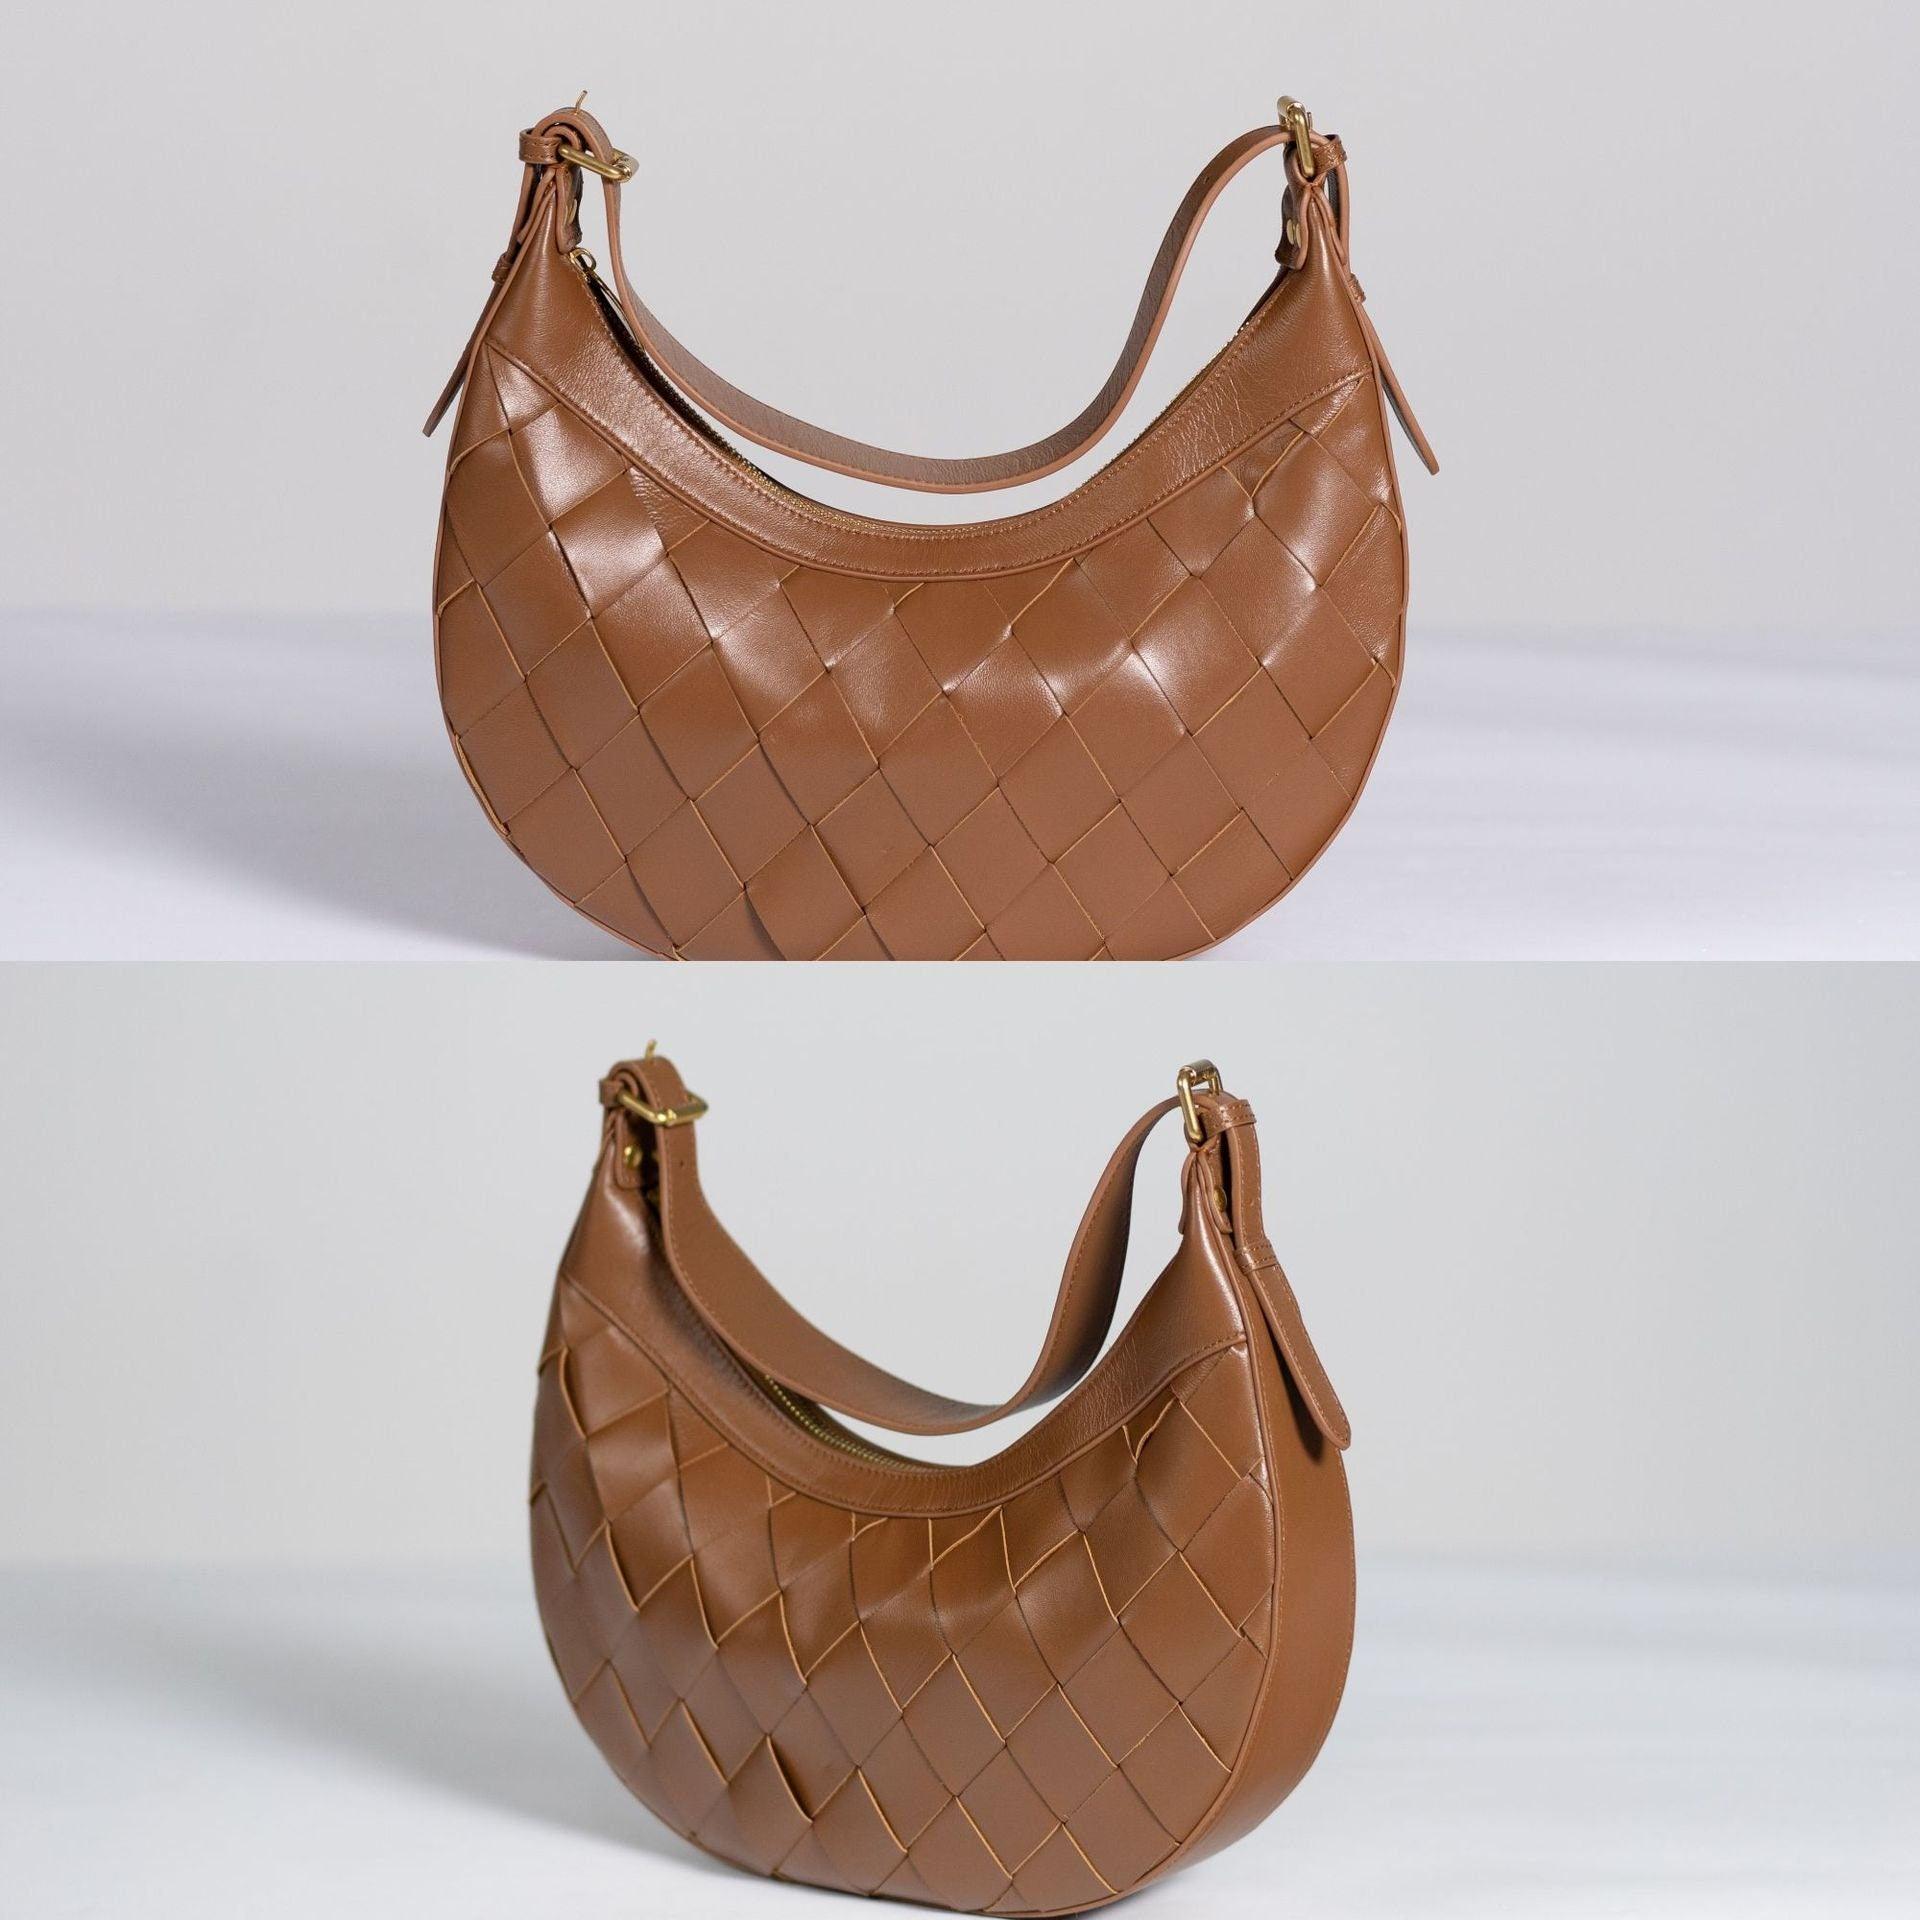 Italy Lambskin Leather Shoulder Bag, Large Intrecciato Saddle Bag, Classic Elegant Designer Tote Bag, Leather Dumpling Bag, Gift to Her, Brown